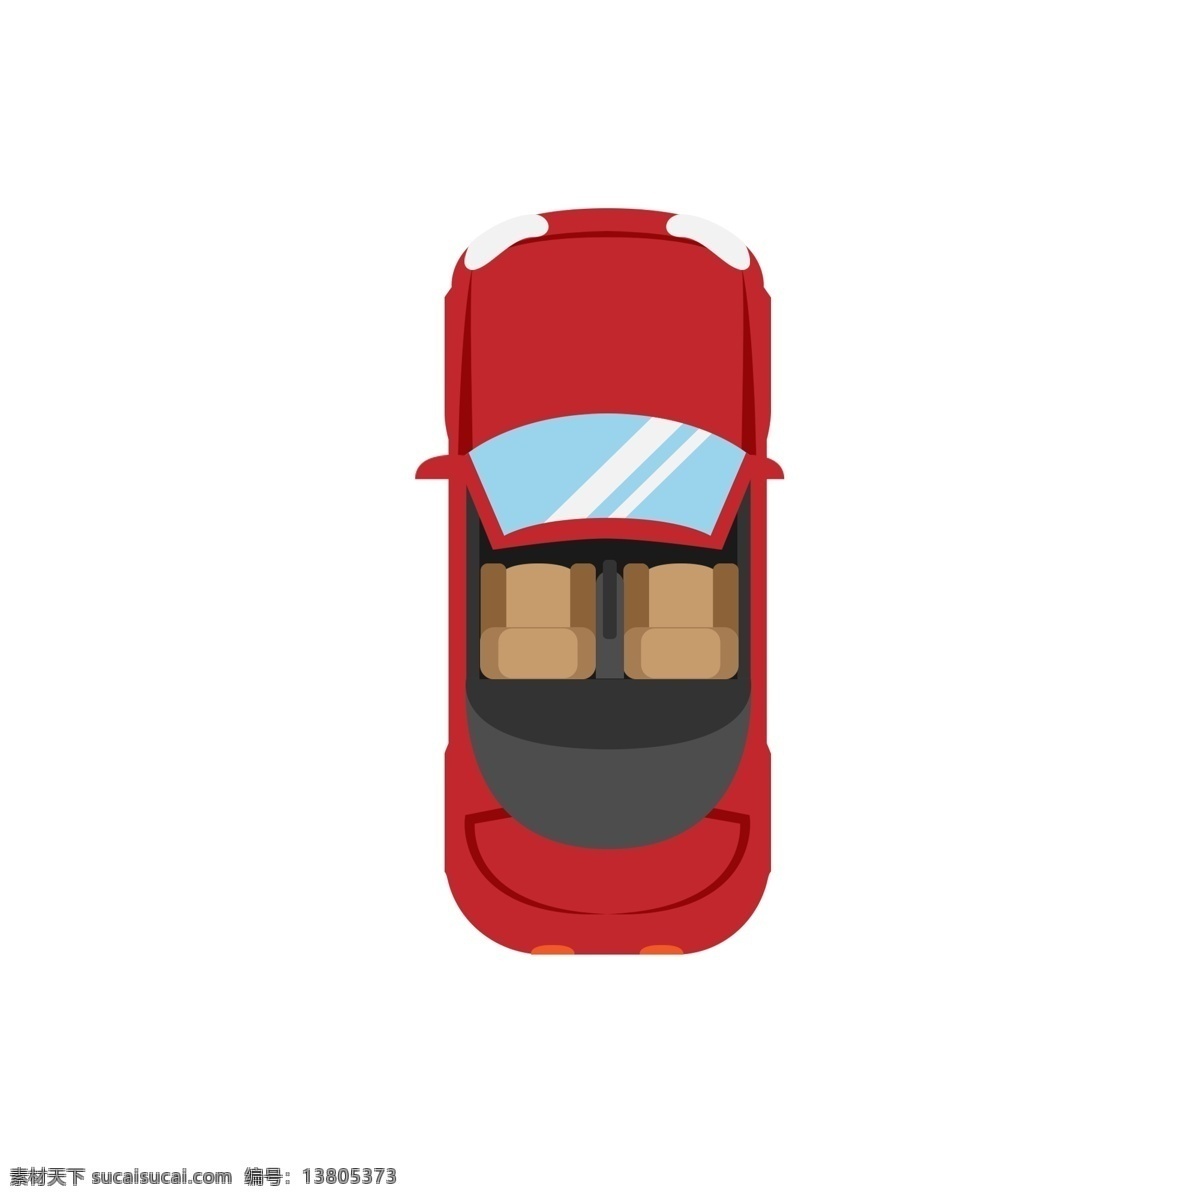 扁平化 红色 敞篷车 正面图 俯视 汽车 交通工具